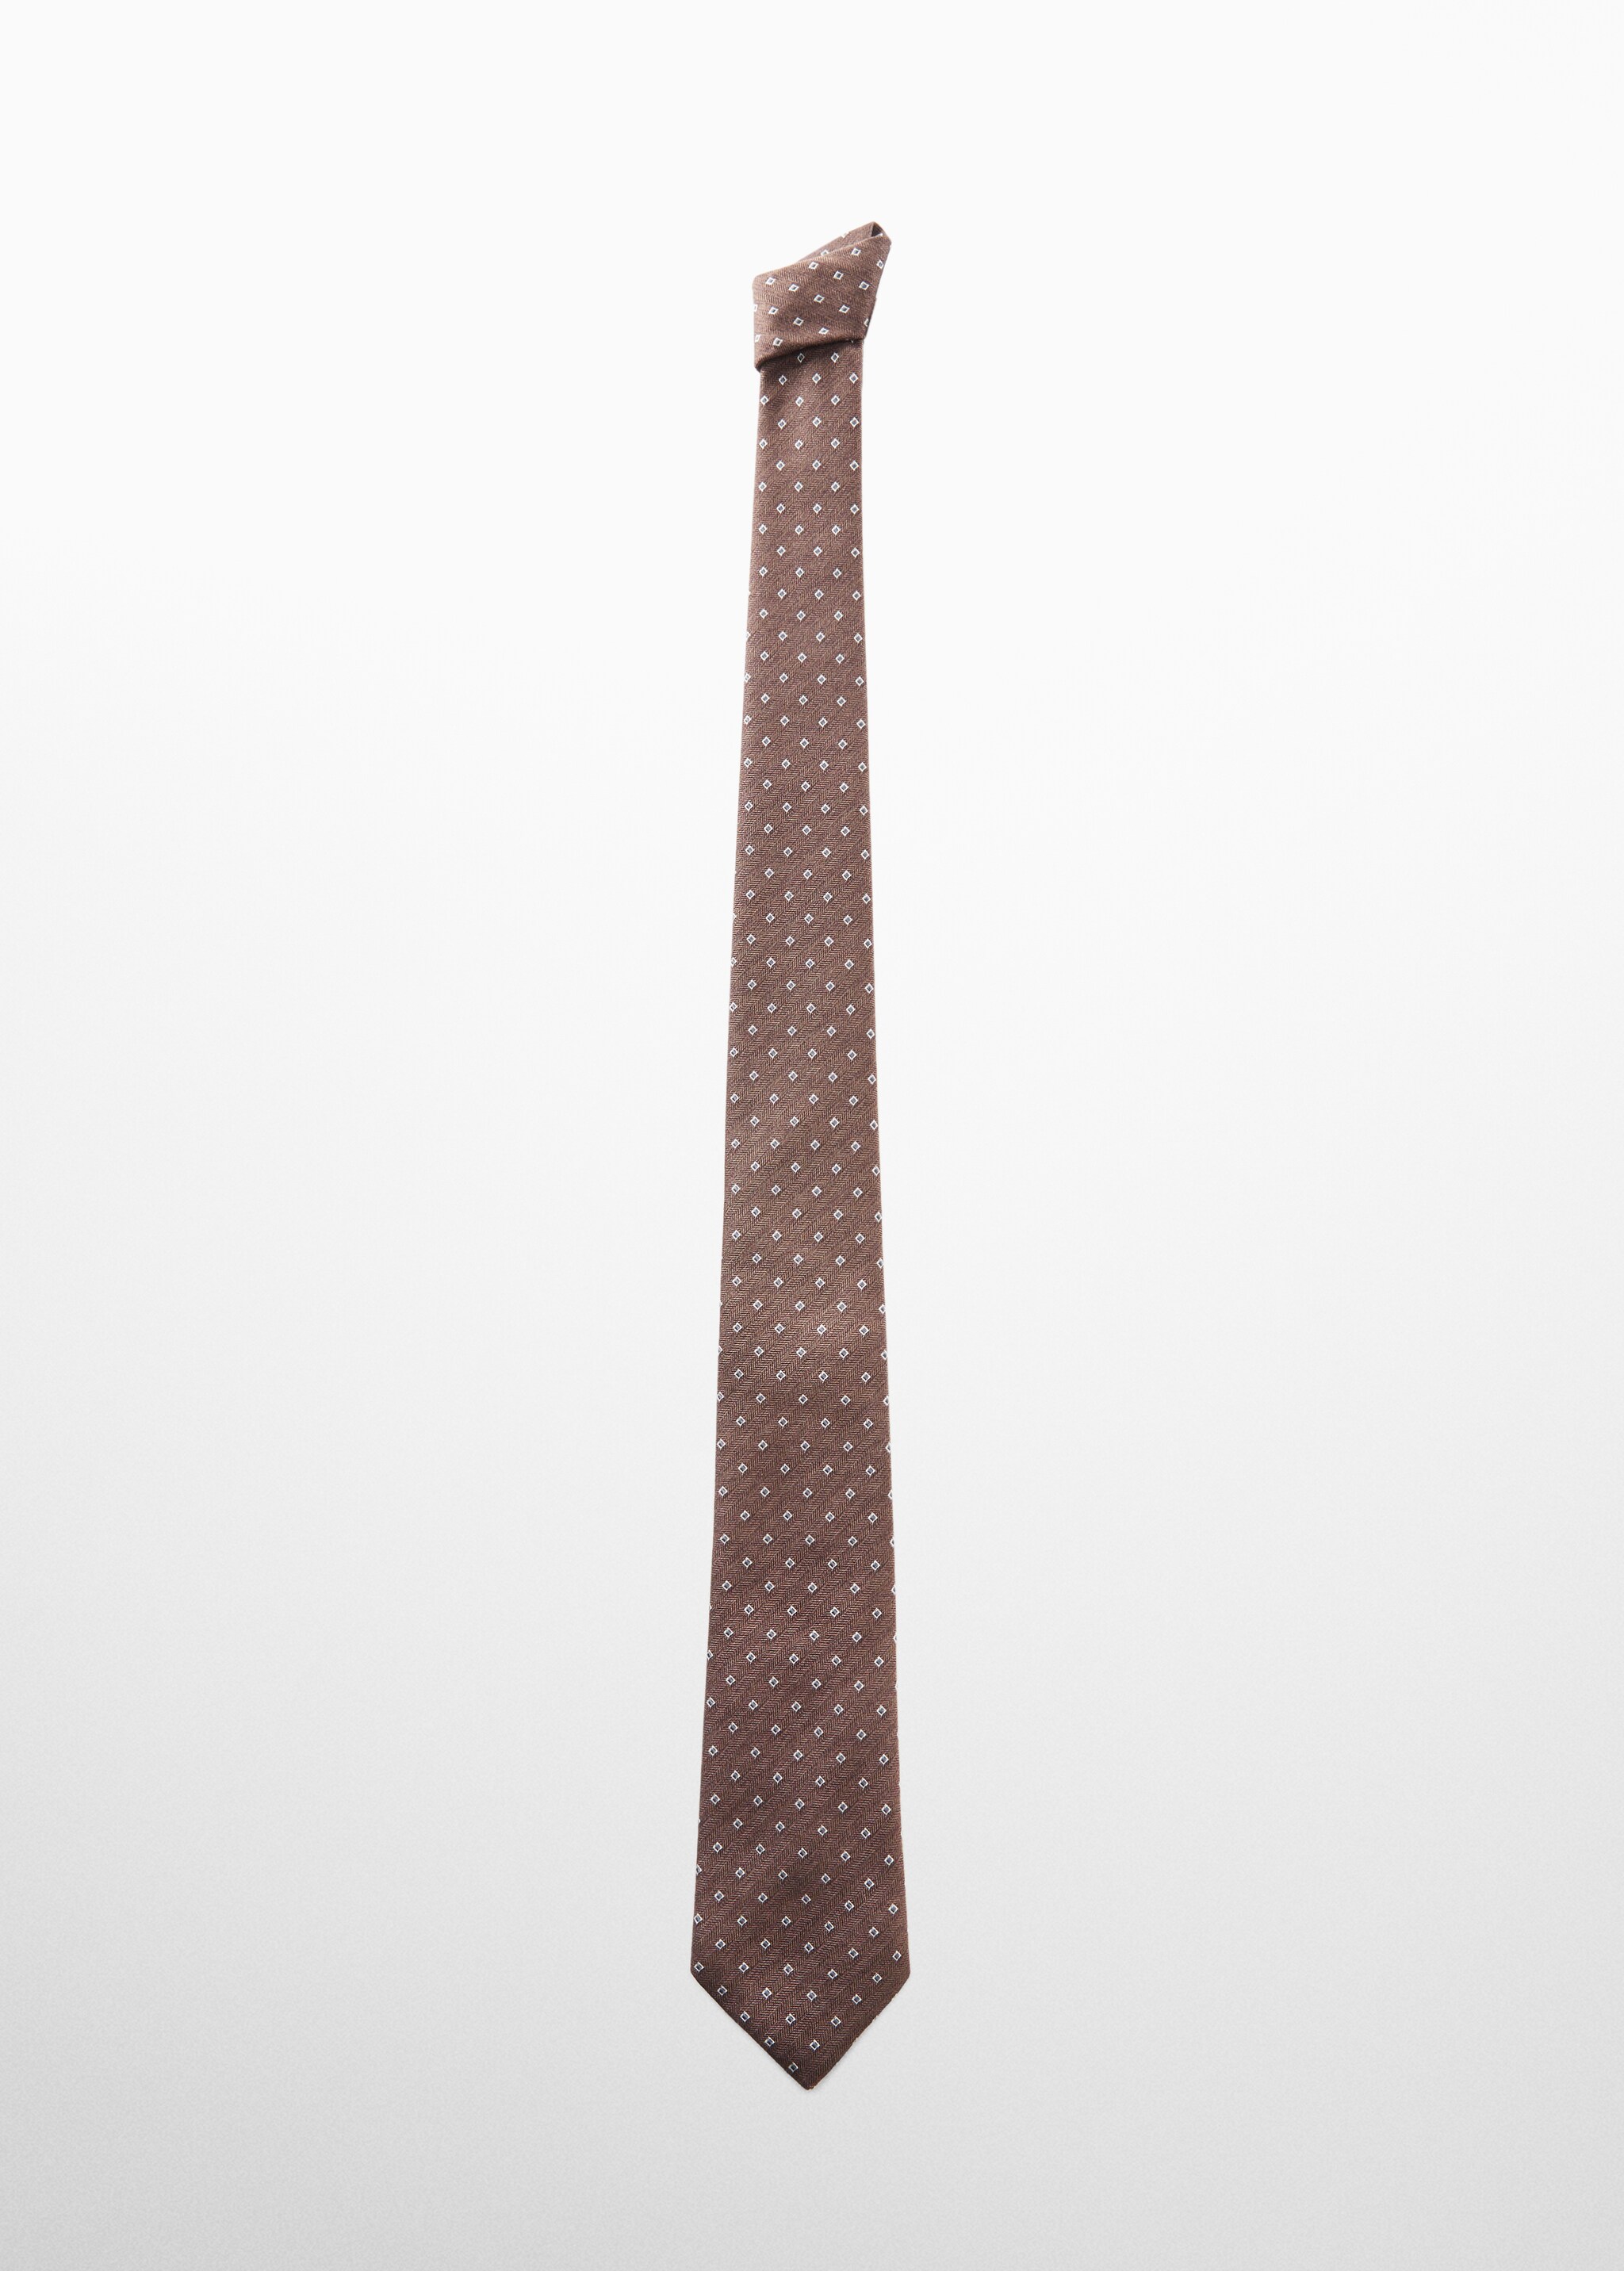 ربطة عنق مطبوعة بأشكال هندسية - منتج دون نموذج